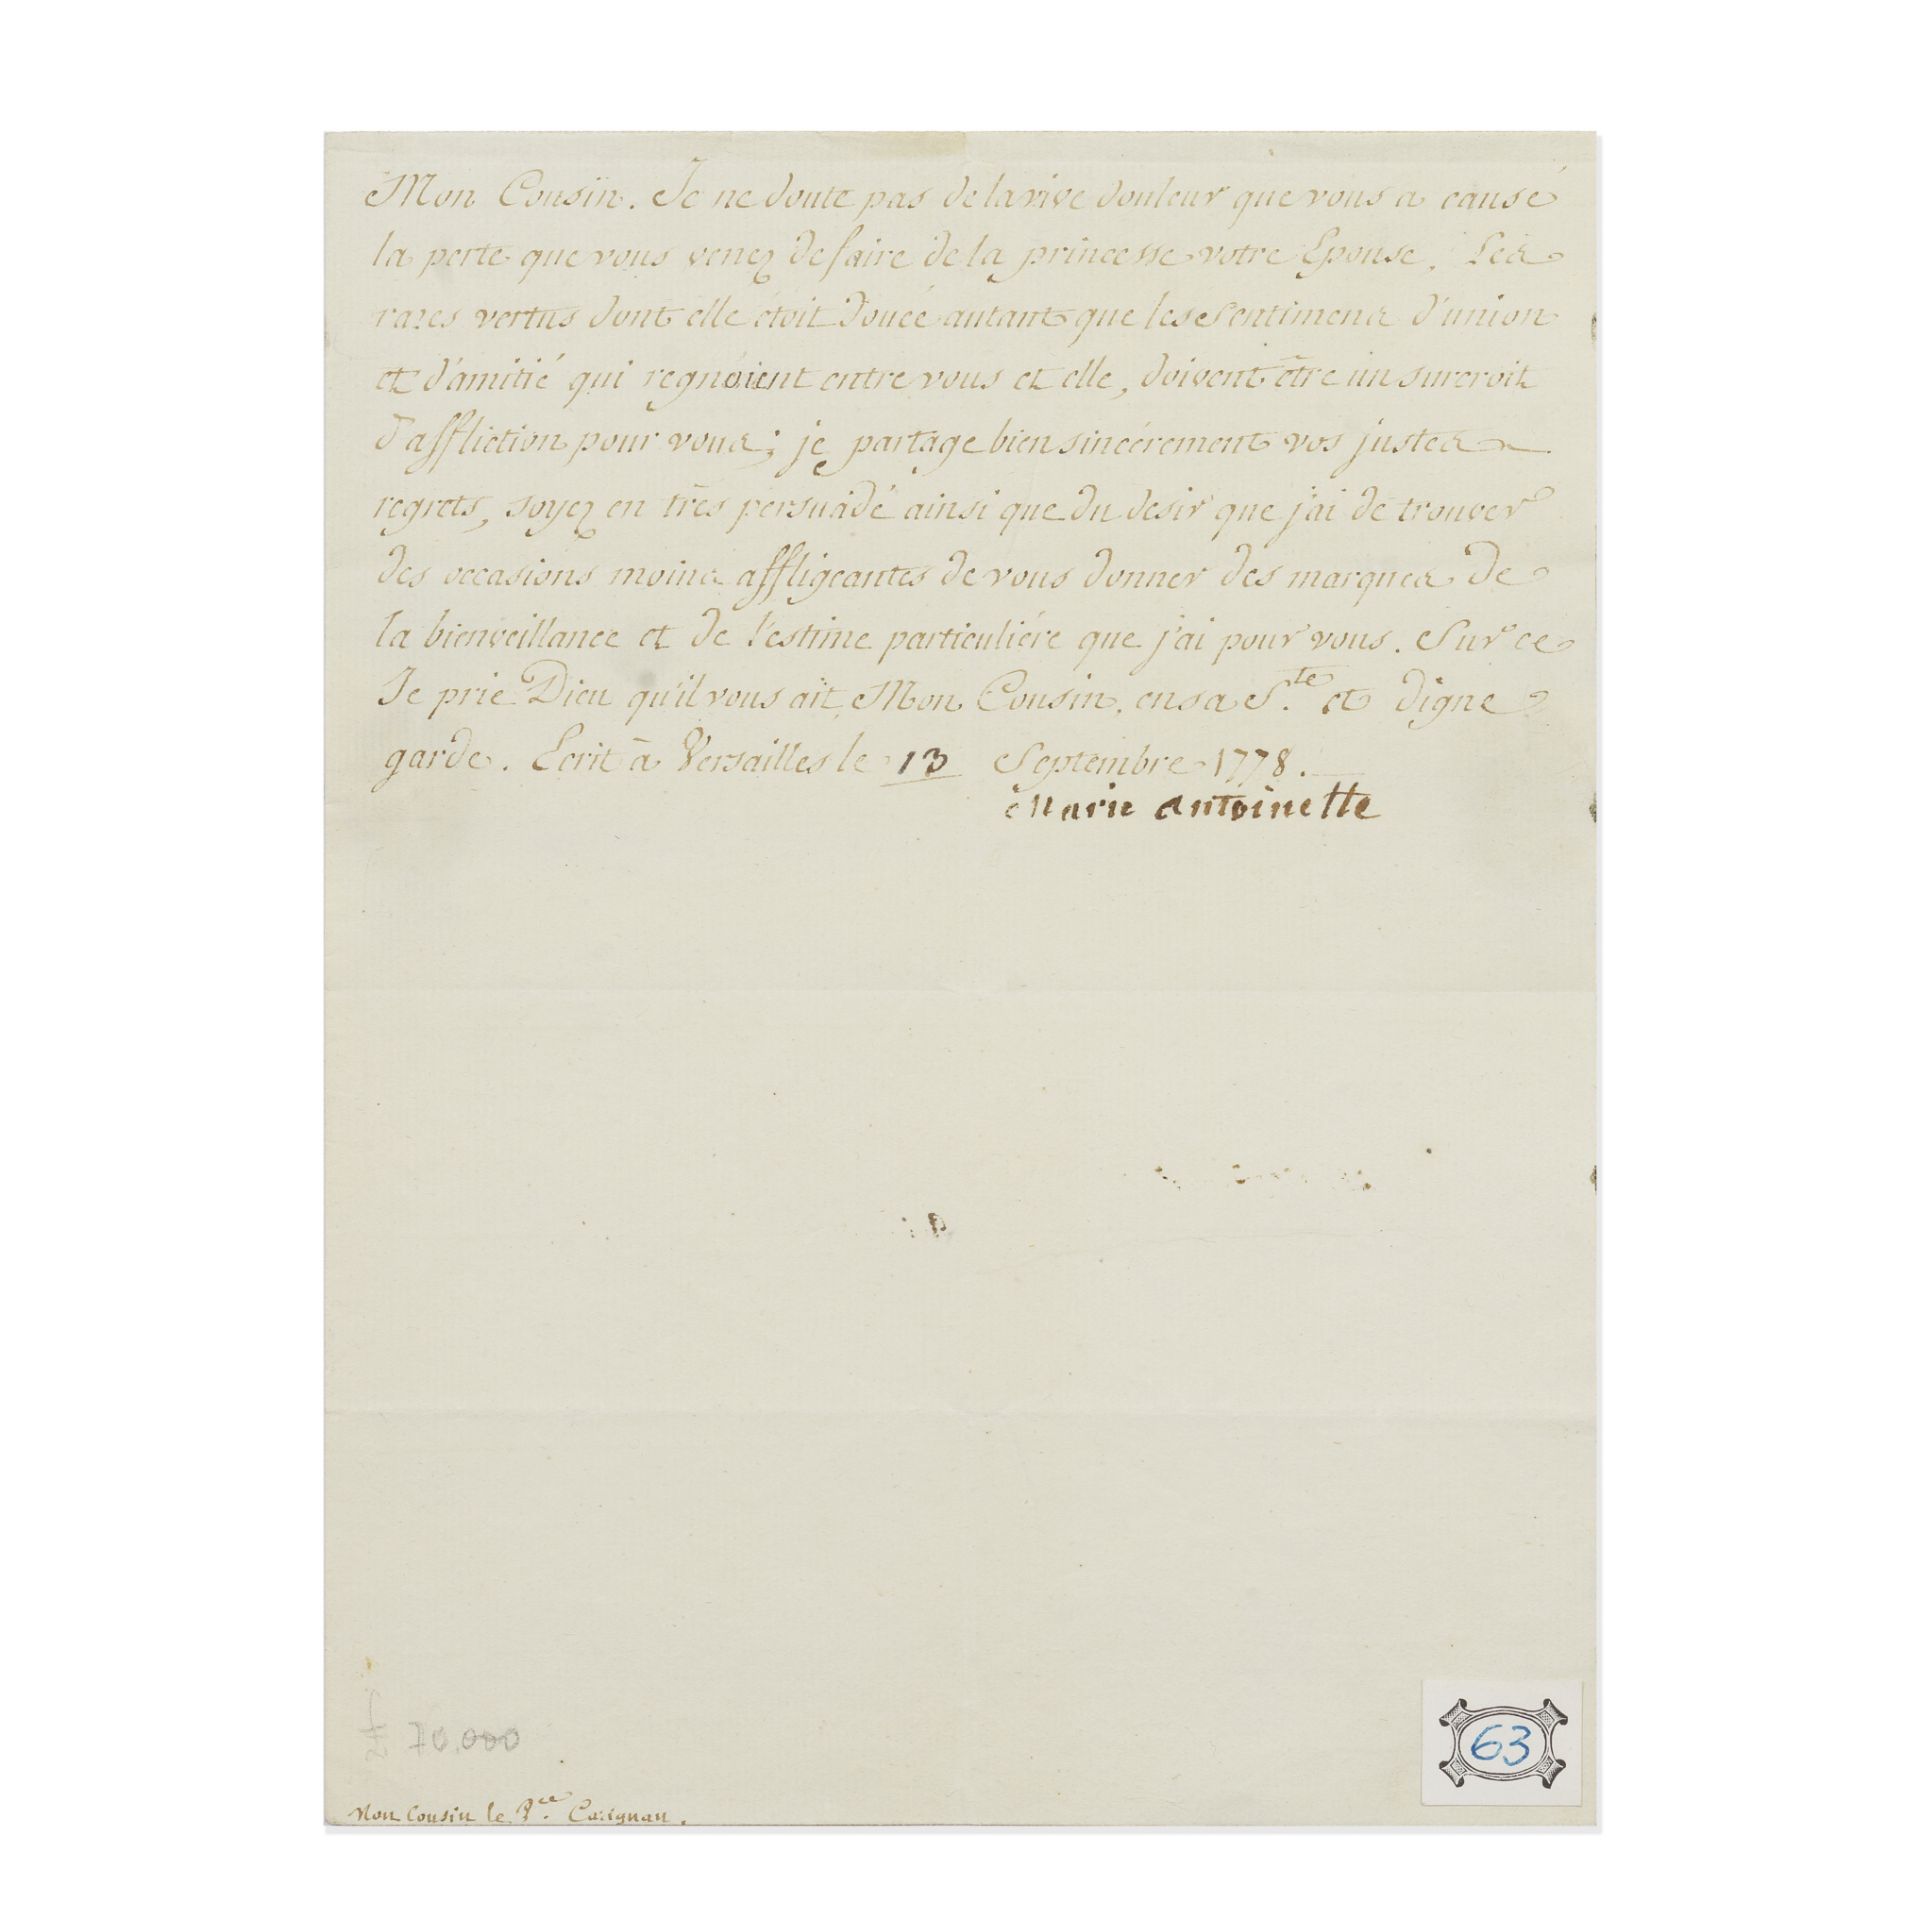 MARIE ANTOINETTE Letter signed ('Marie Antoinette'), Versailles, 13 September 1778